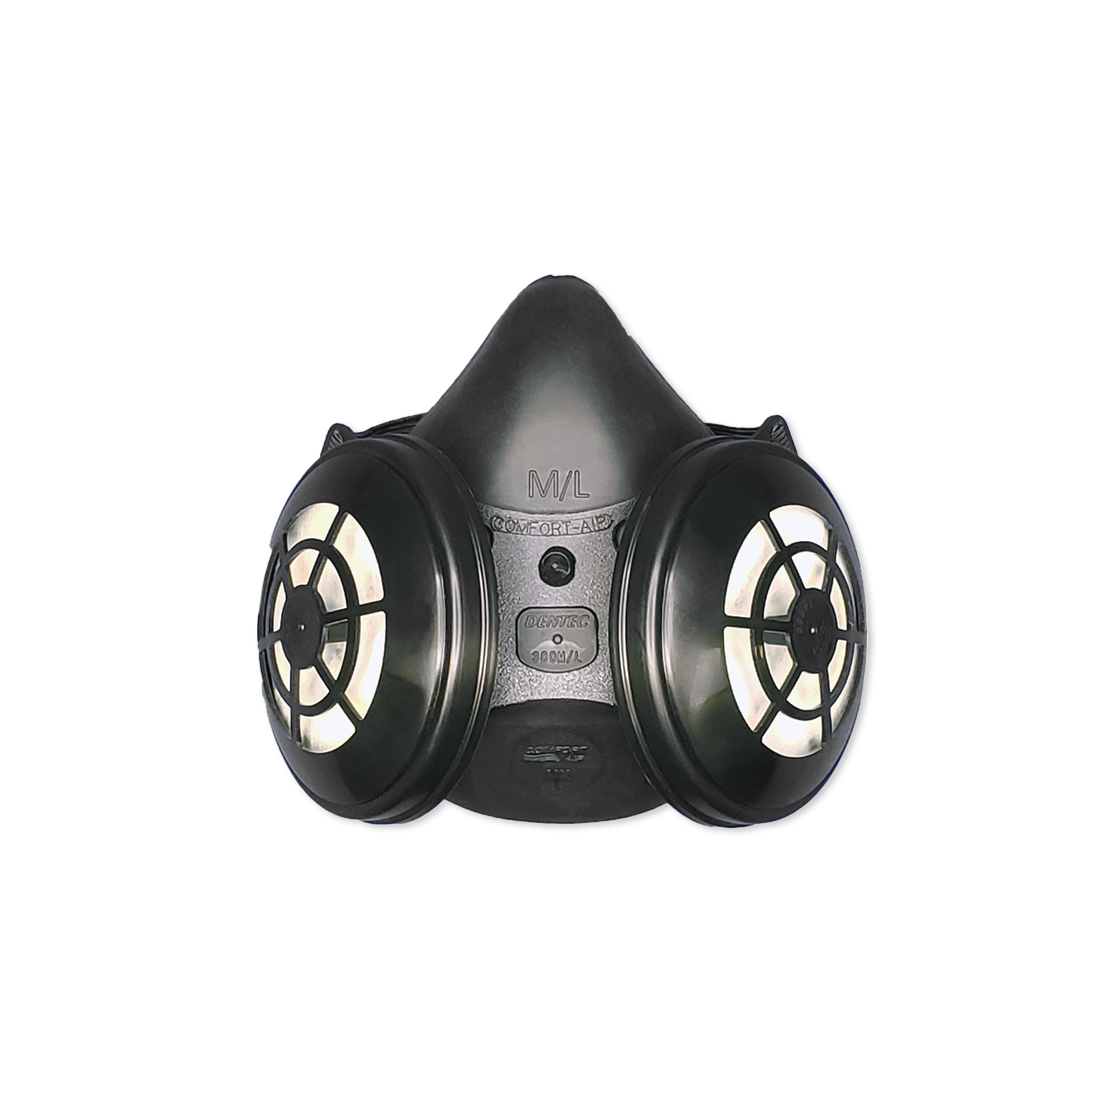 Dentec Comfort-Air Respirator - N95 or P100